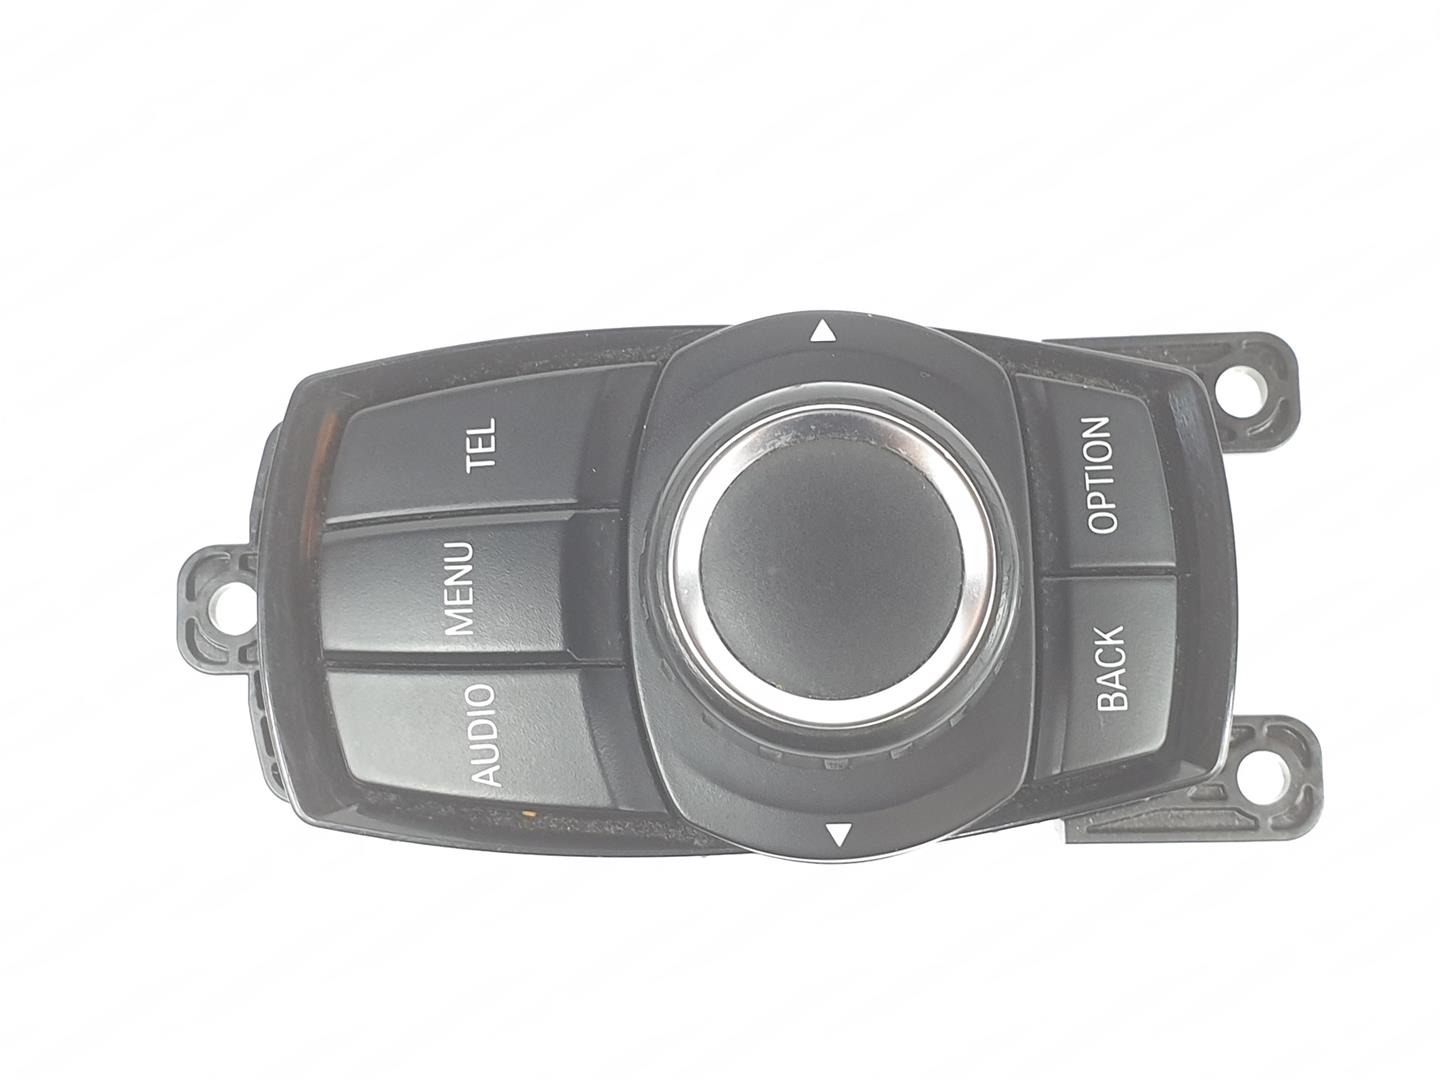 BMW 1 Series F20/F21 (2011-2020) Navigation Control Knob 65829317695, 65829381678 19898554